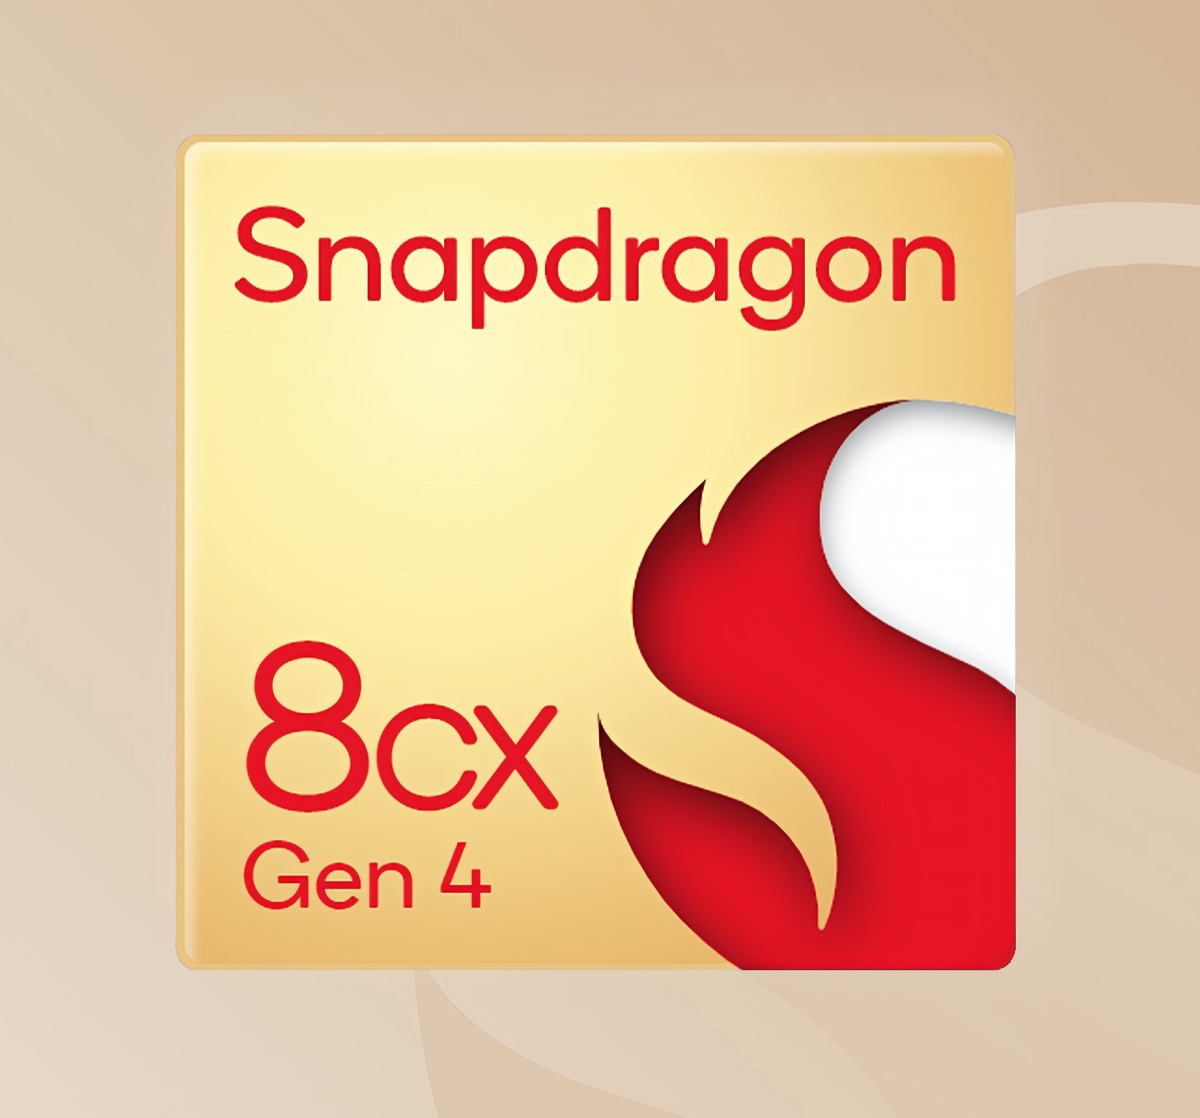 Snapdragon 8cx gen 4_1200